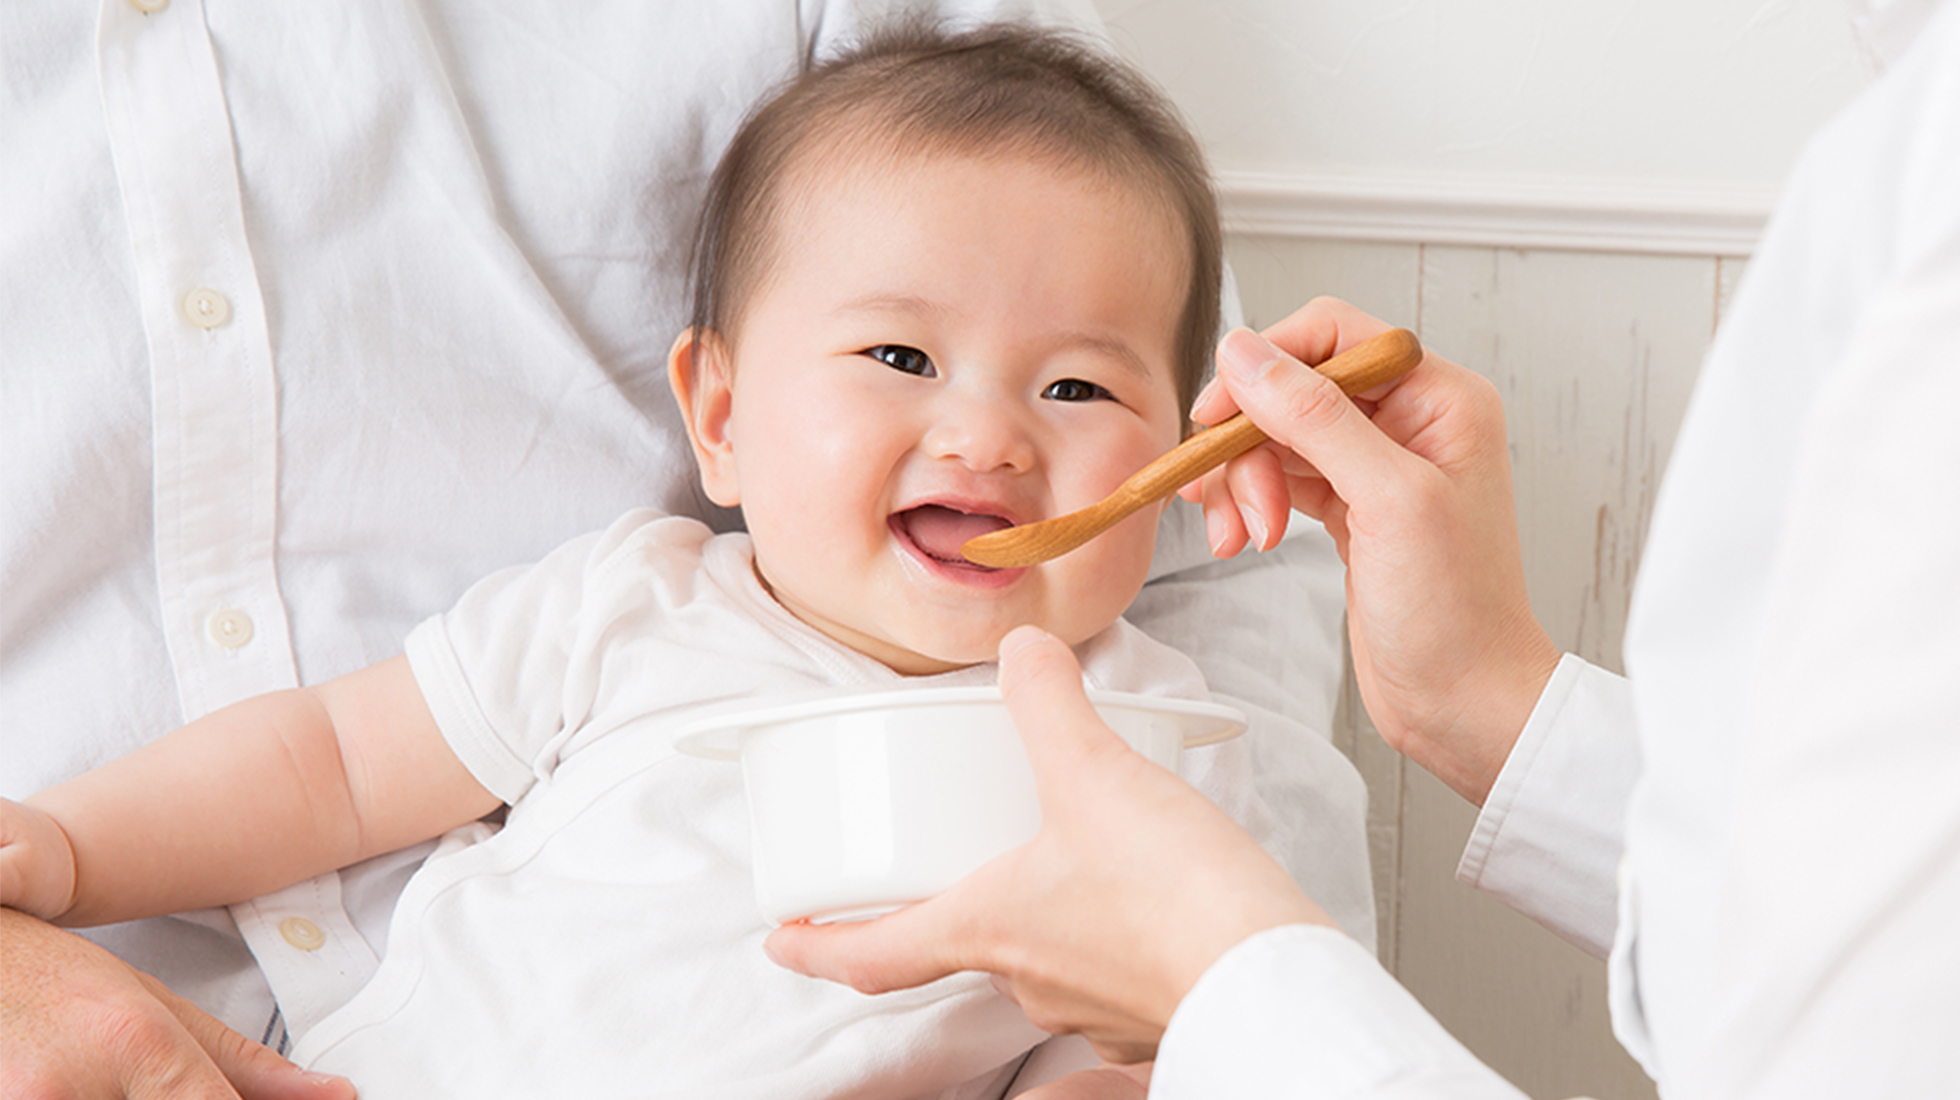 虫歯の原因菌が親から赤ちゃんに移ることがあります